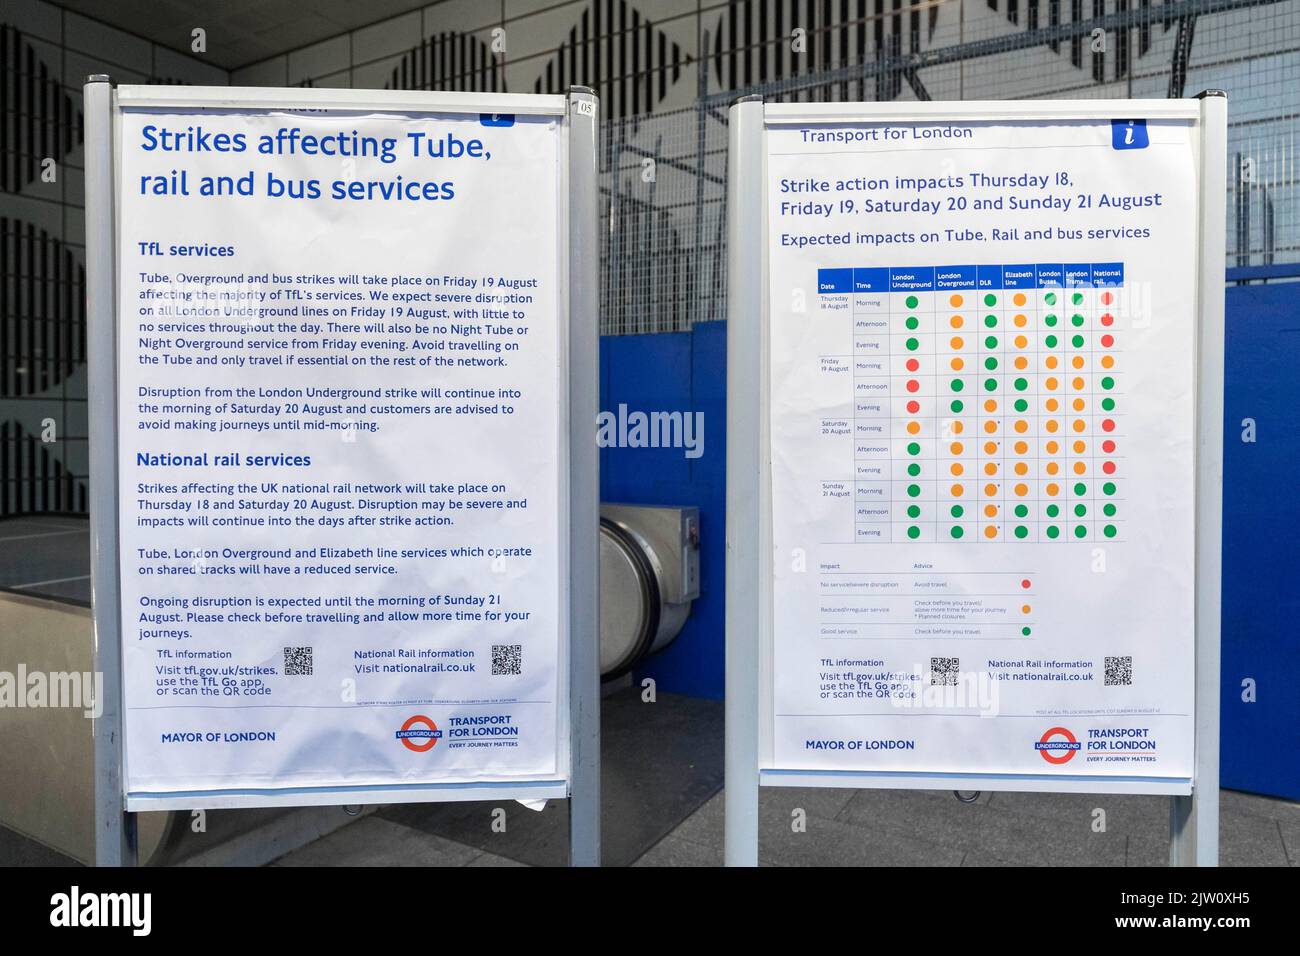 Lo sciopero della metropolitana si svolge oggi a Londra. La stazione di Tottenham Court Road è vista chiusa dietro le persiane questa mattina. Immagine scattata il 19th ago 2022. © Foto Stock